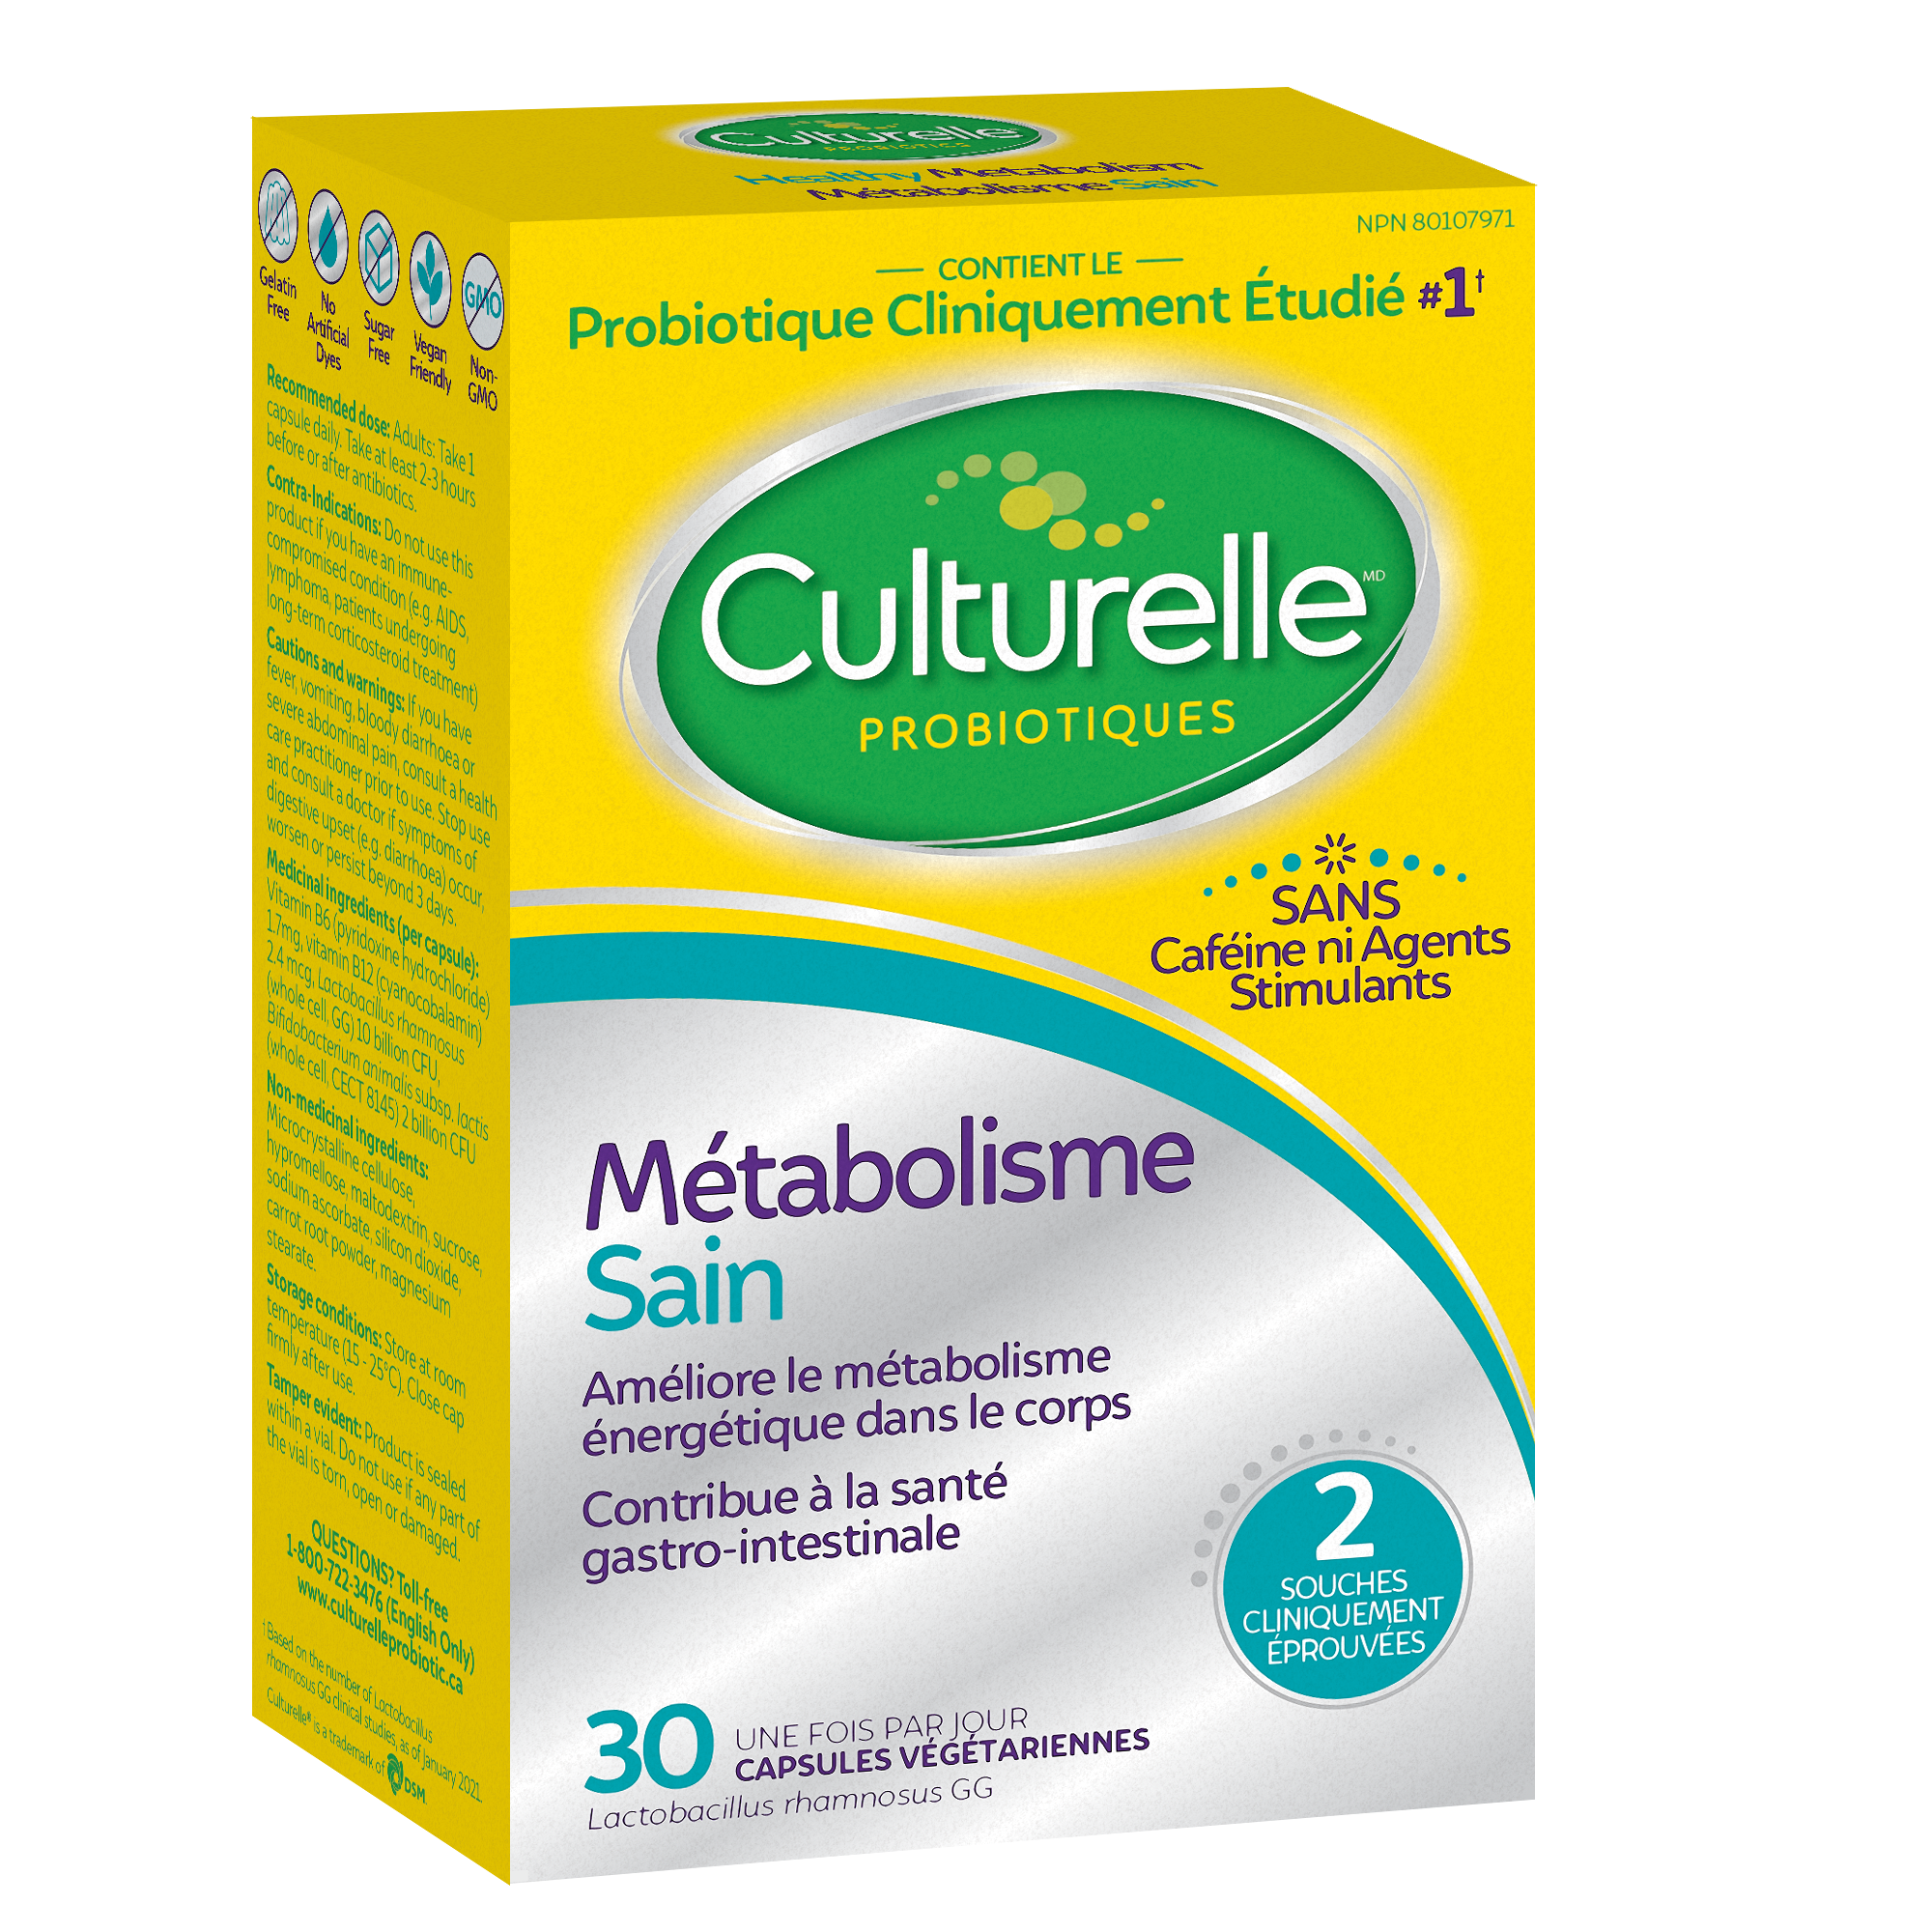 Culturelle Métabolisme + Poids – Côté gauche de l’emballage